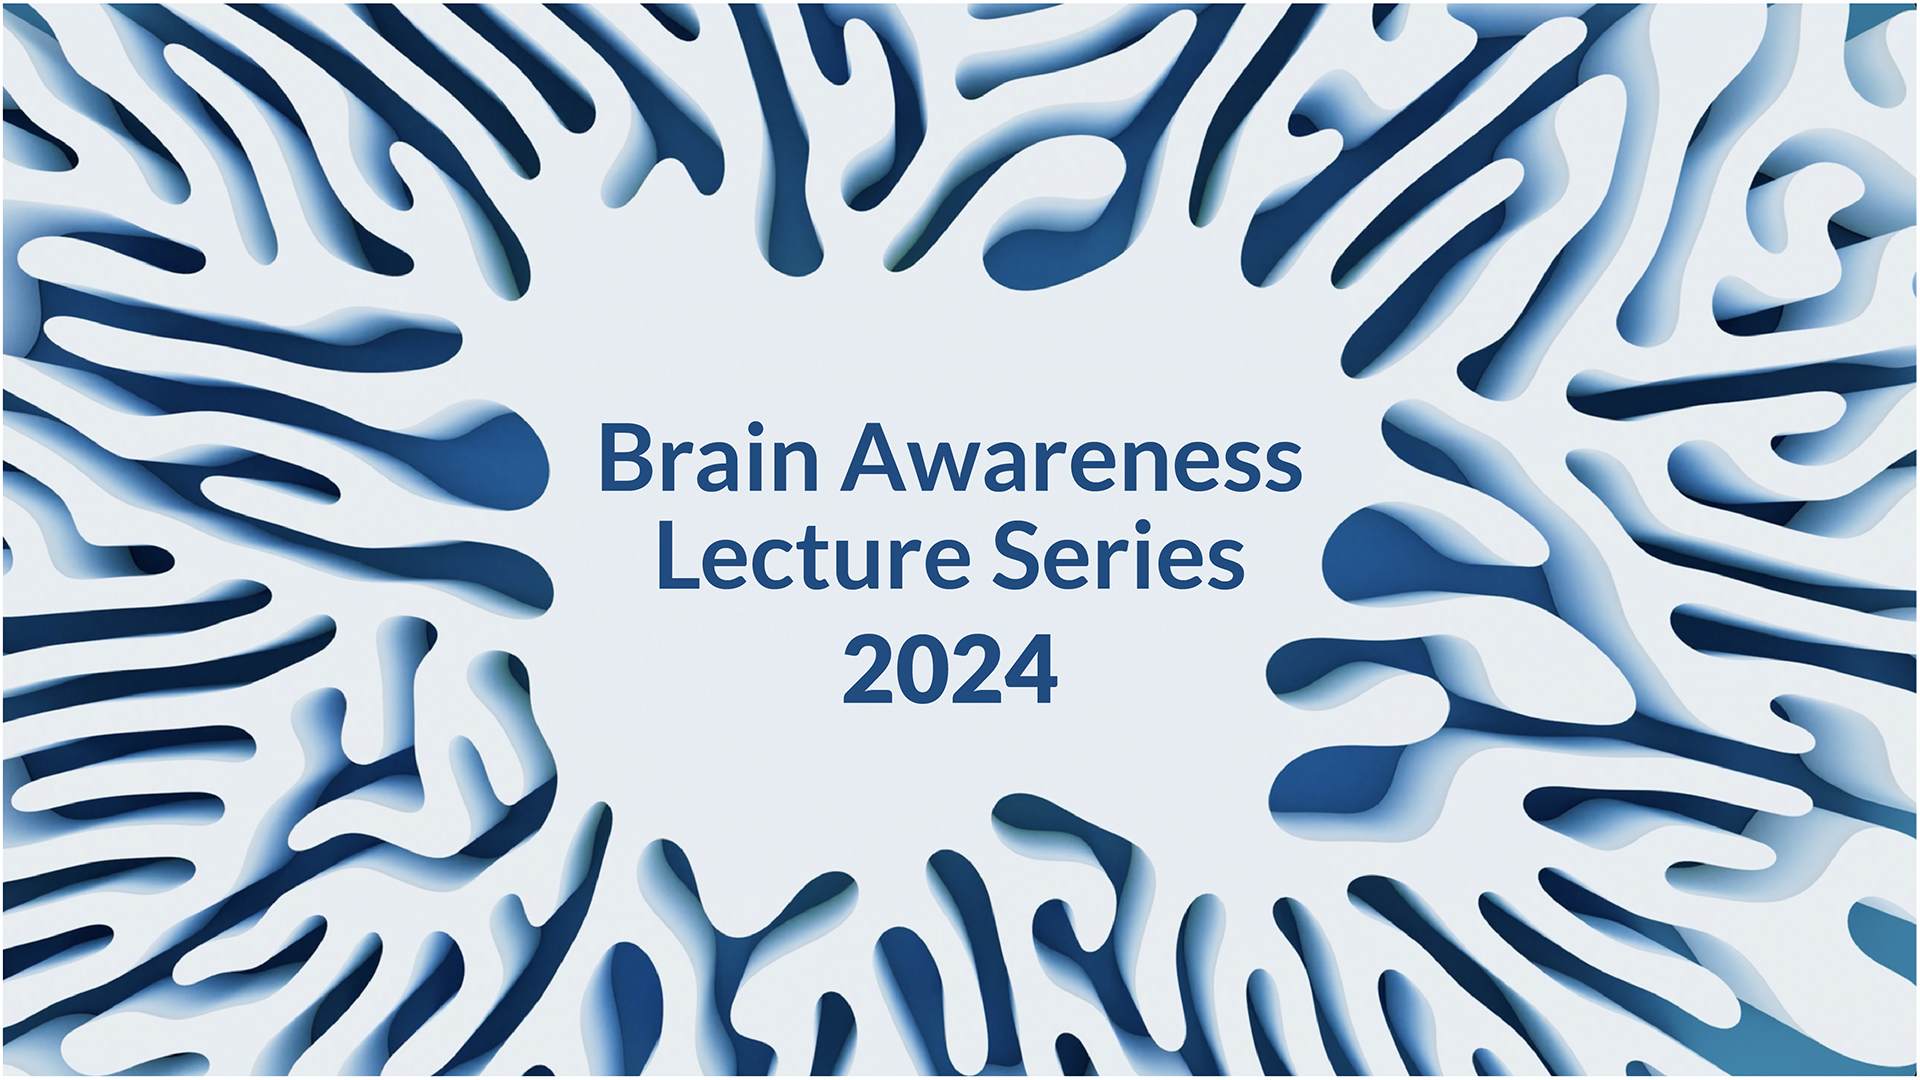 Brain Awareness Lecture Series 2024